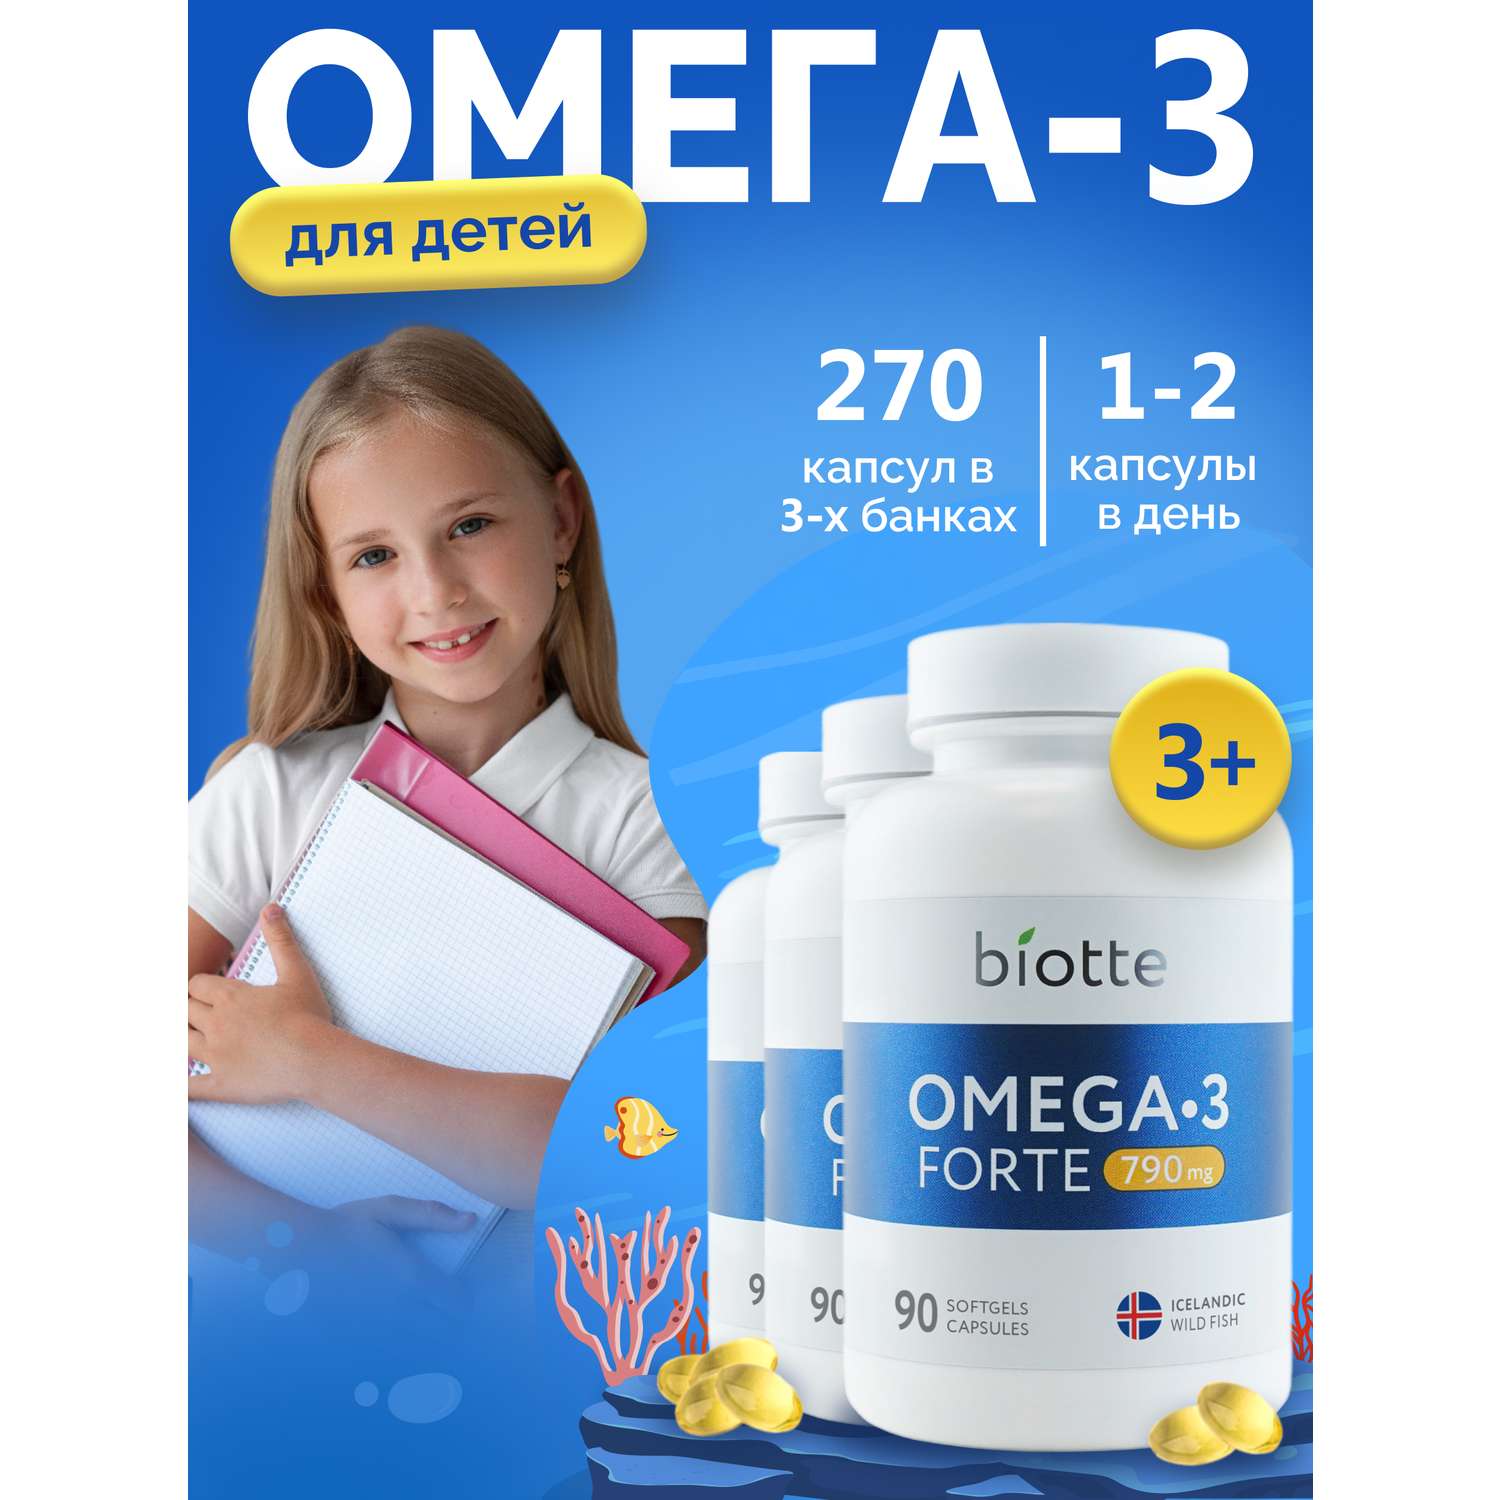 Омега 3 форте BIOTTE 790 mg fish oil премиум рыбий жир для детей подростков взрослых 270 капсул - фото 1